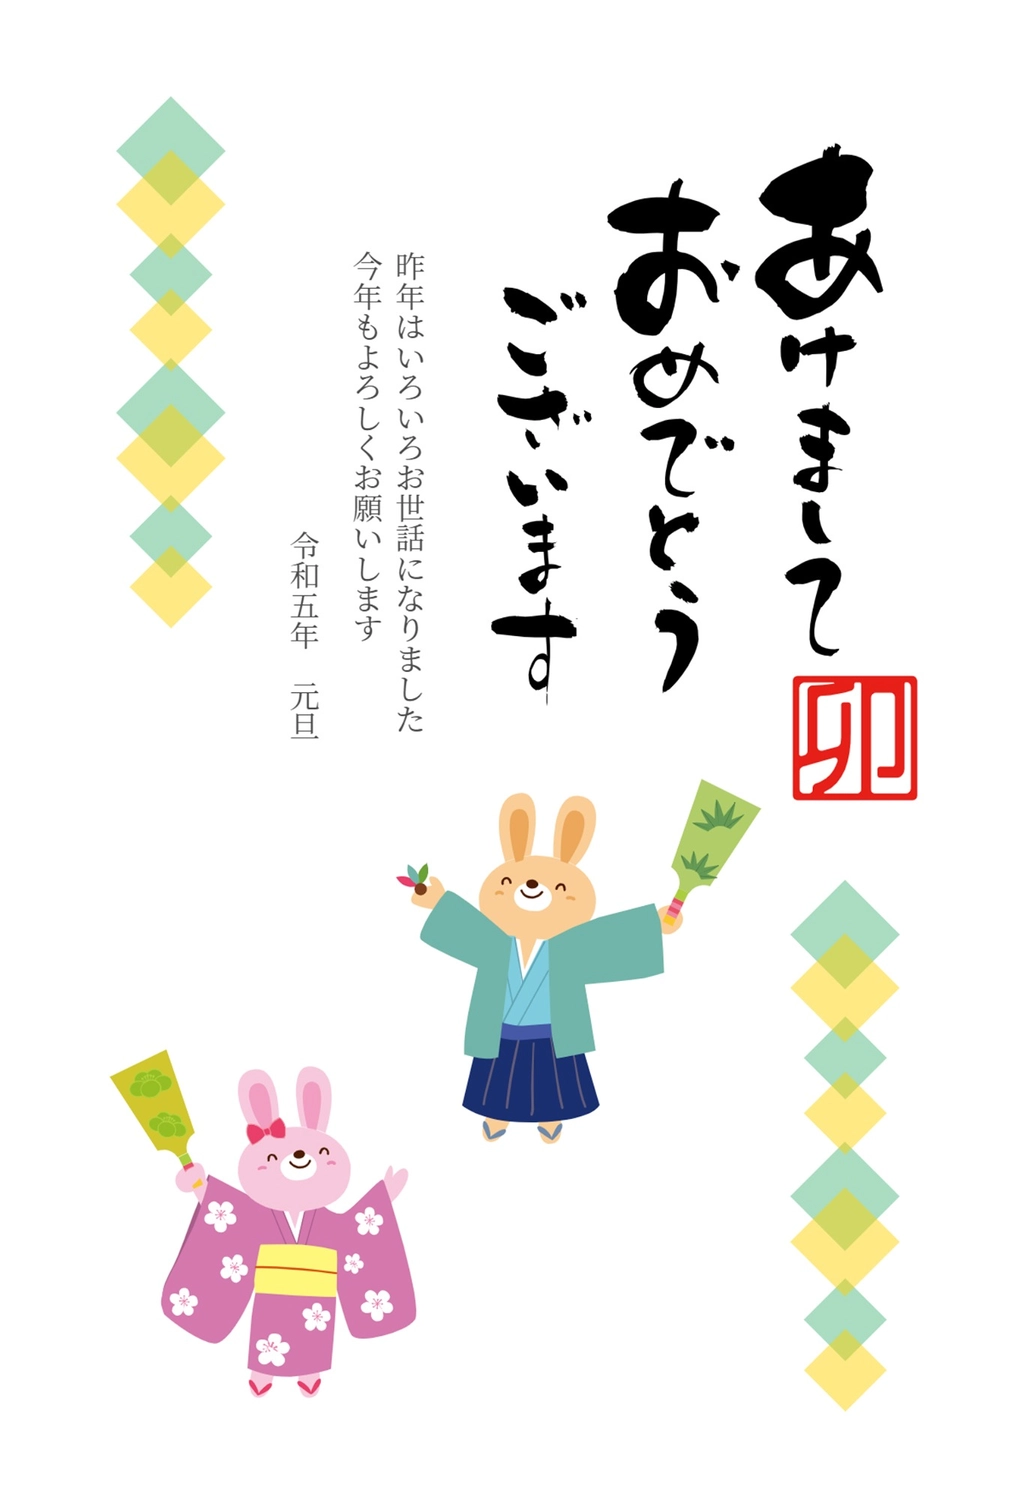 羽子板で遊ぶ2匹のうさぎ年賀状, NEW YEAR, concord, rabbit, New Year Card template